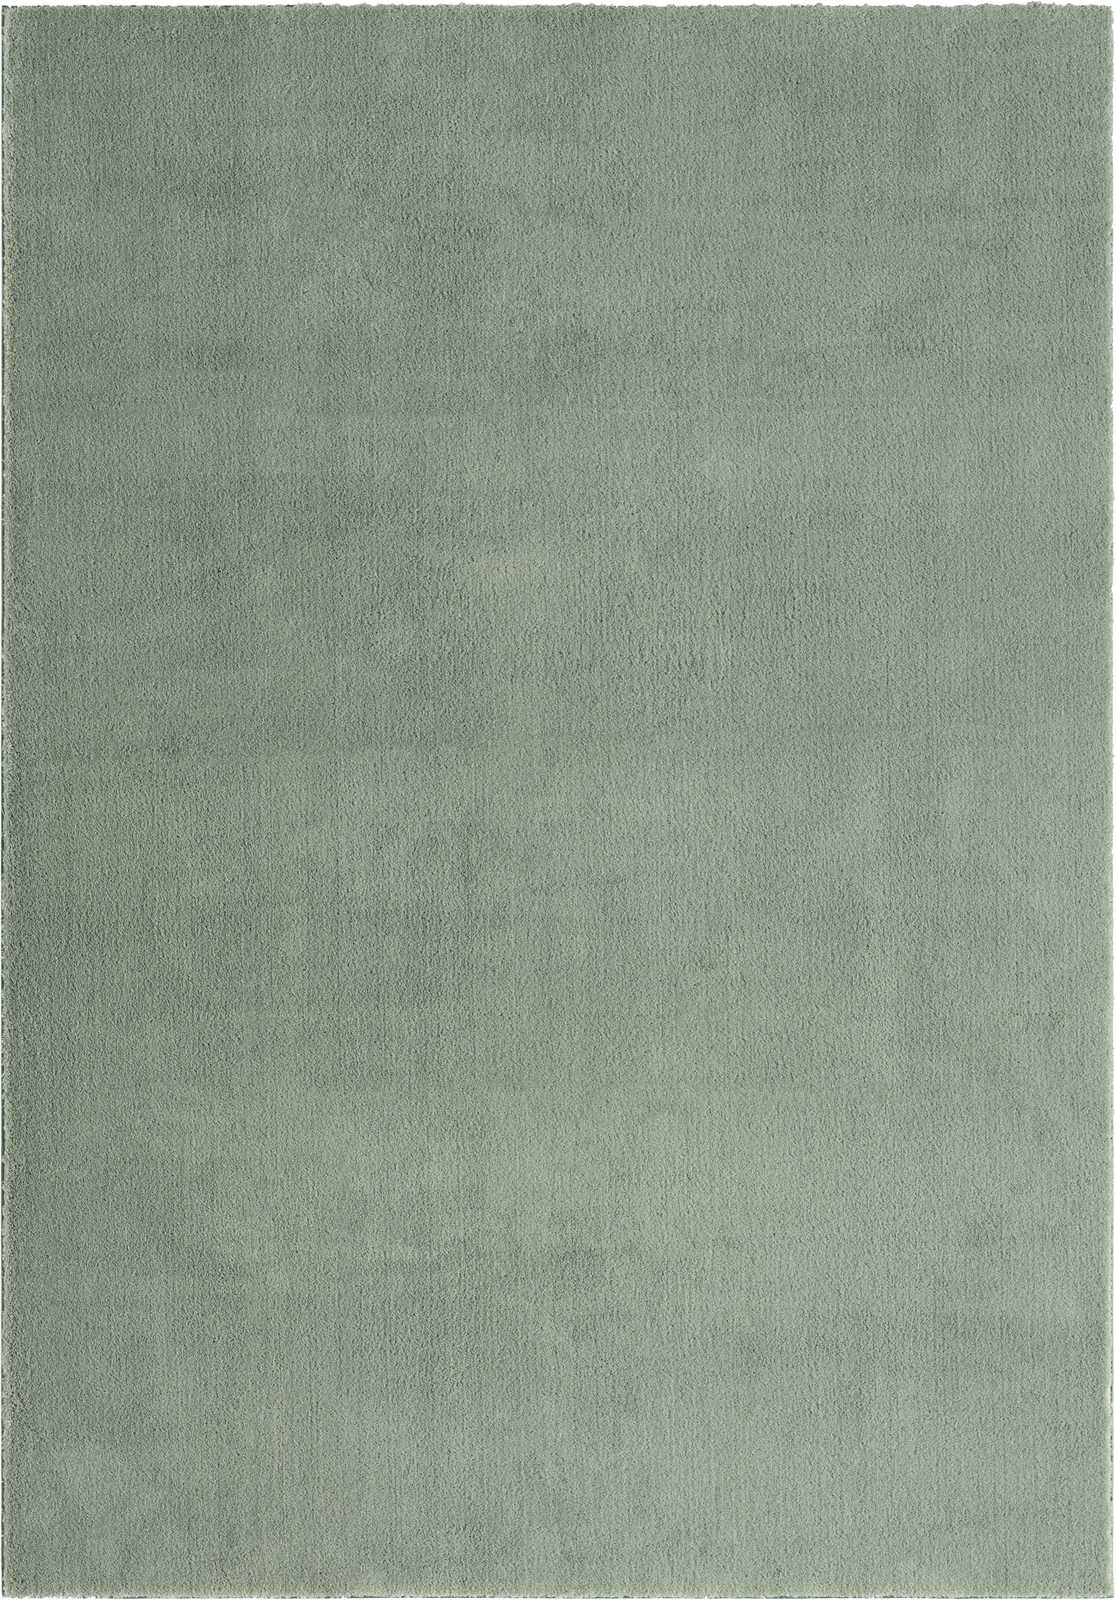             Sanfter Hochflor Teppich in Grün – 110 x 60 cm
        